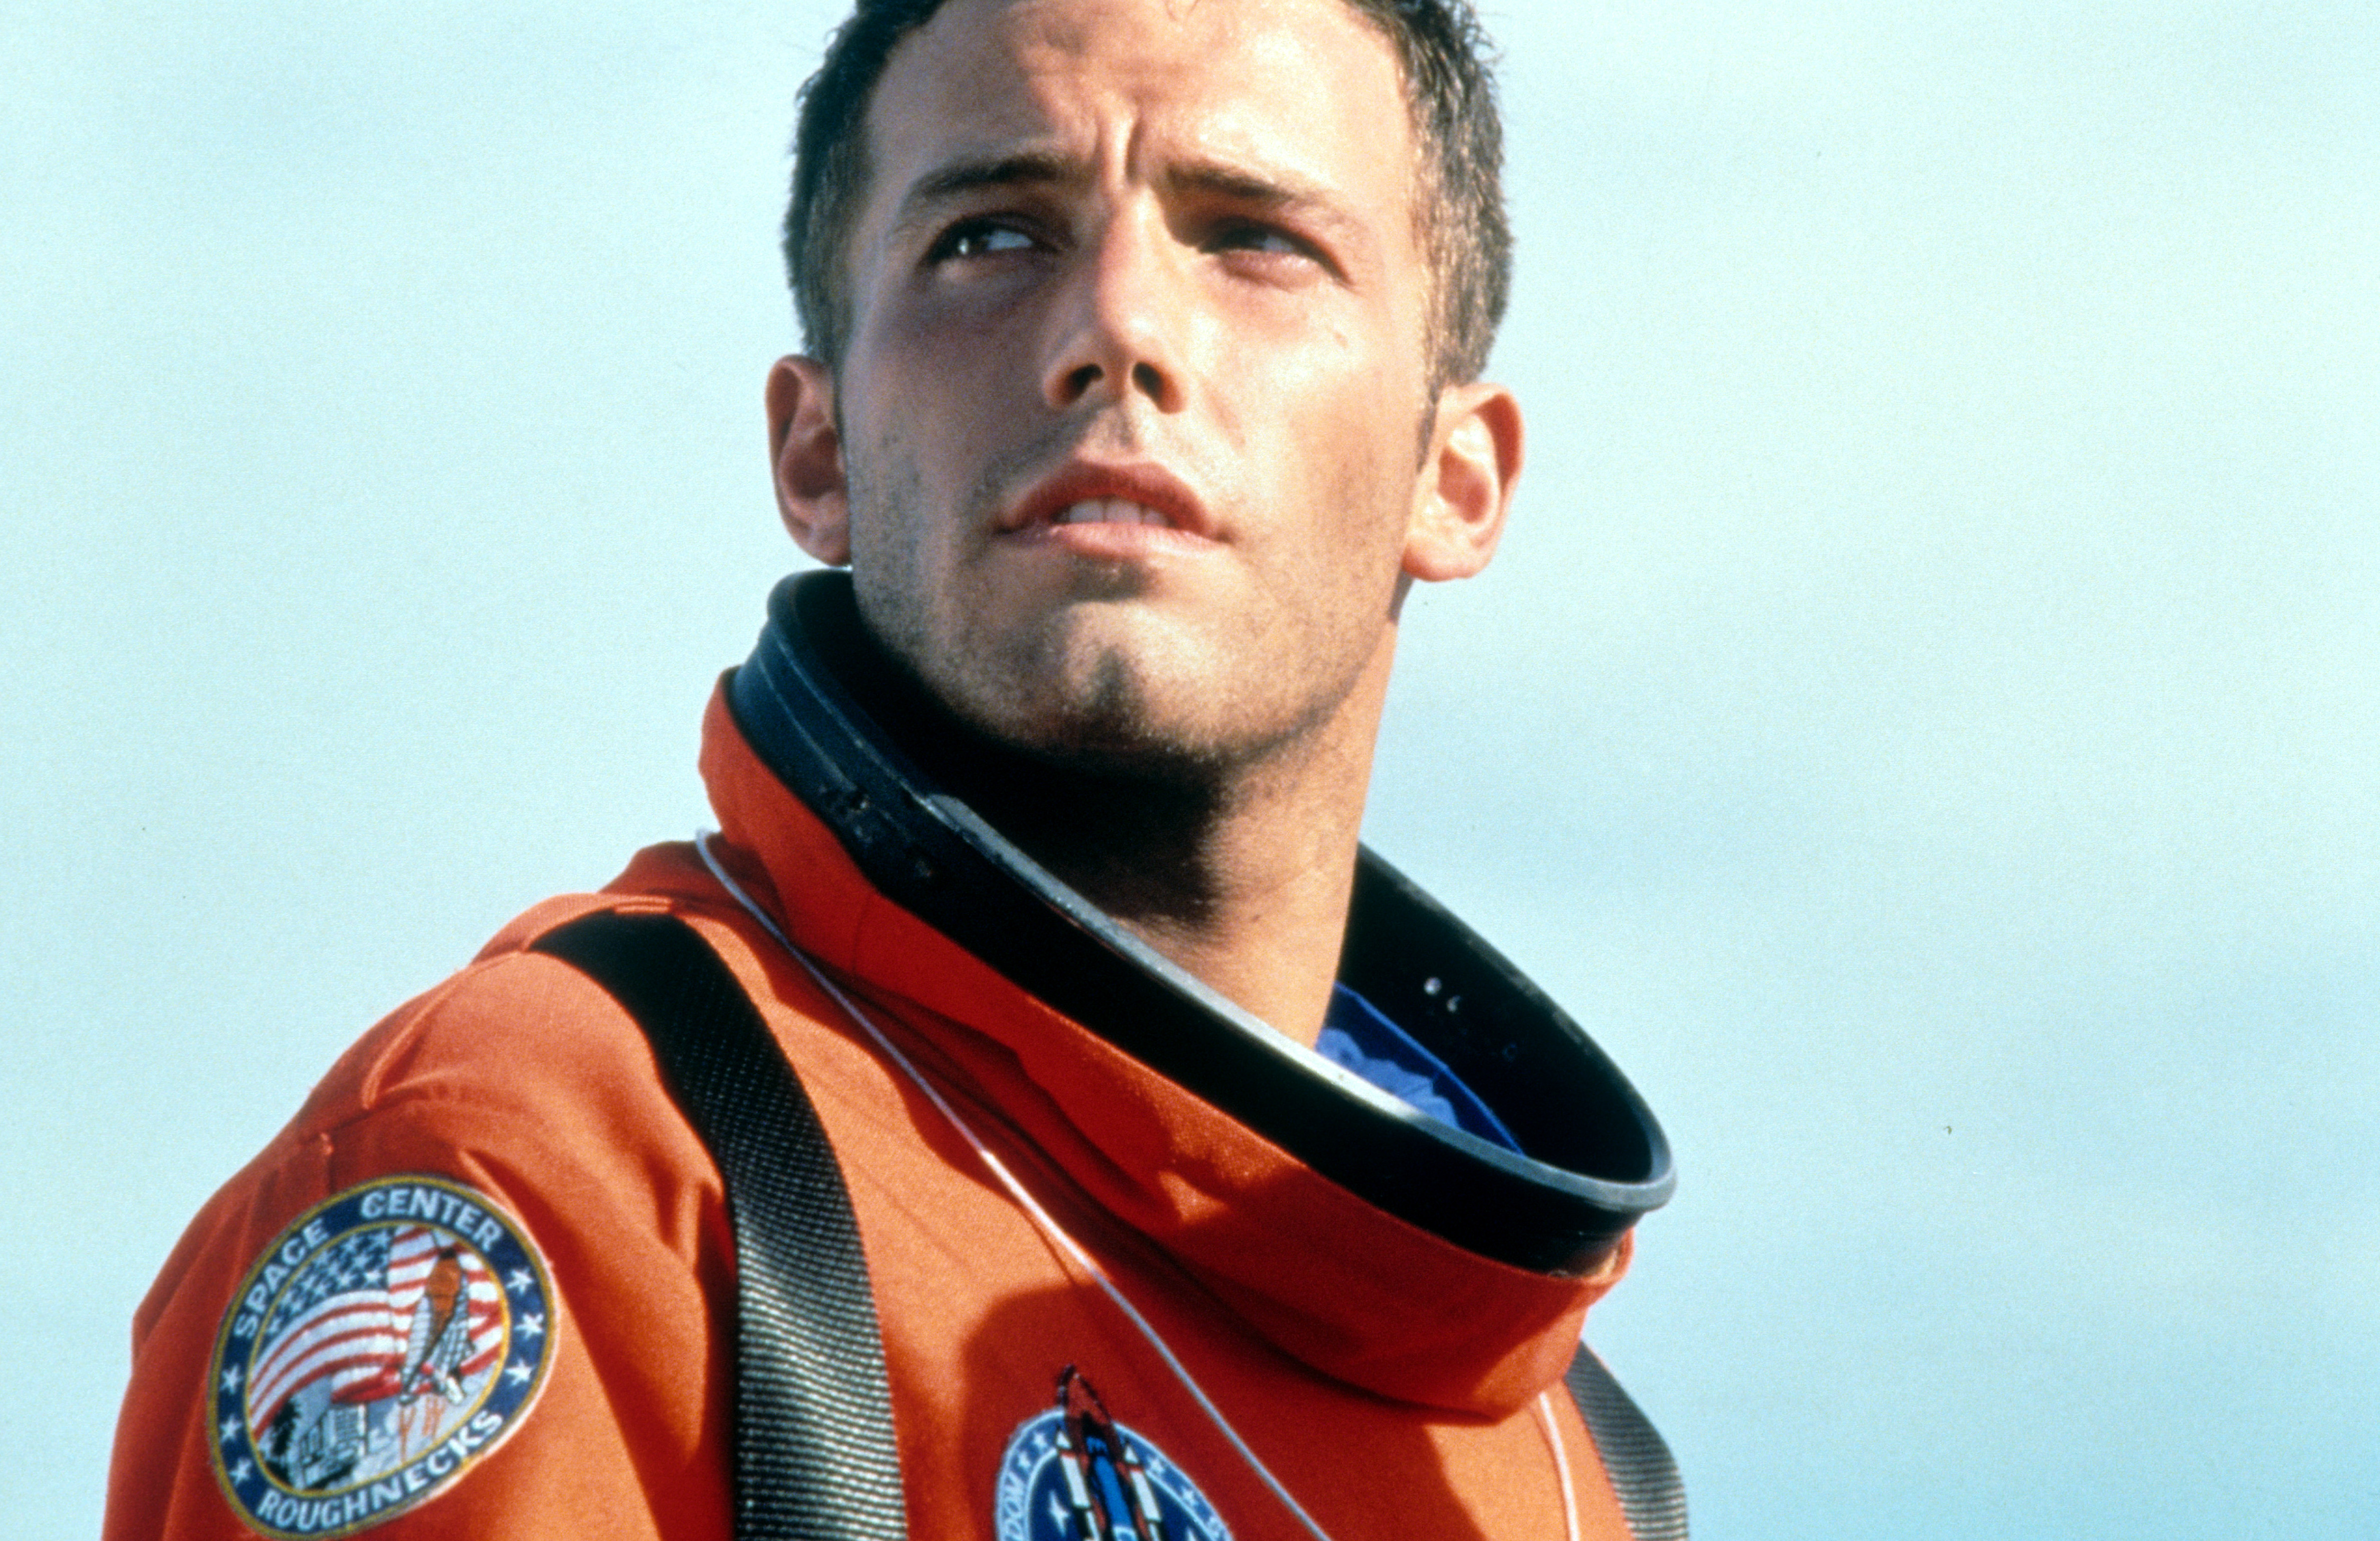 Ben Affleck in "Armageddon" im Jahr 1998. | Quelle: Getty Images